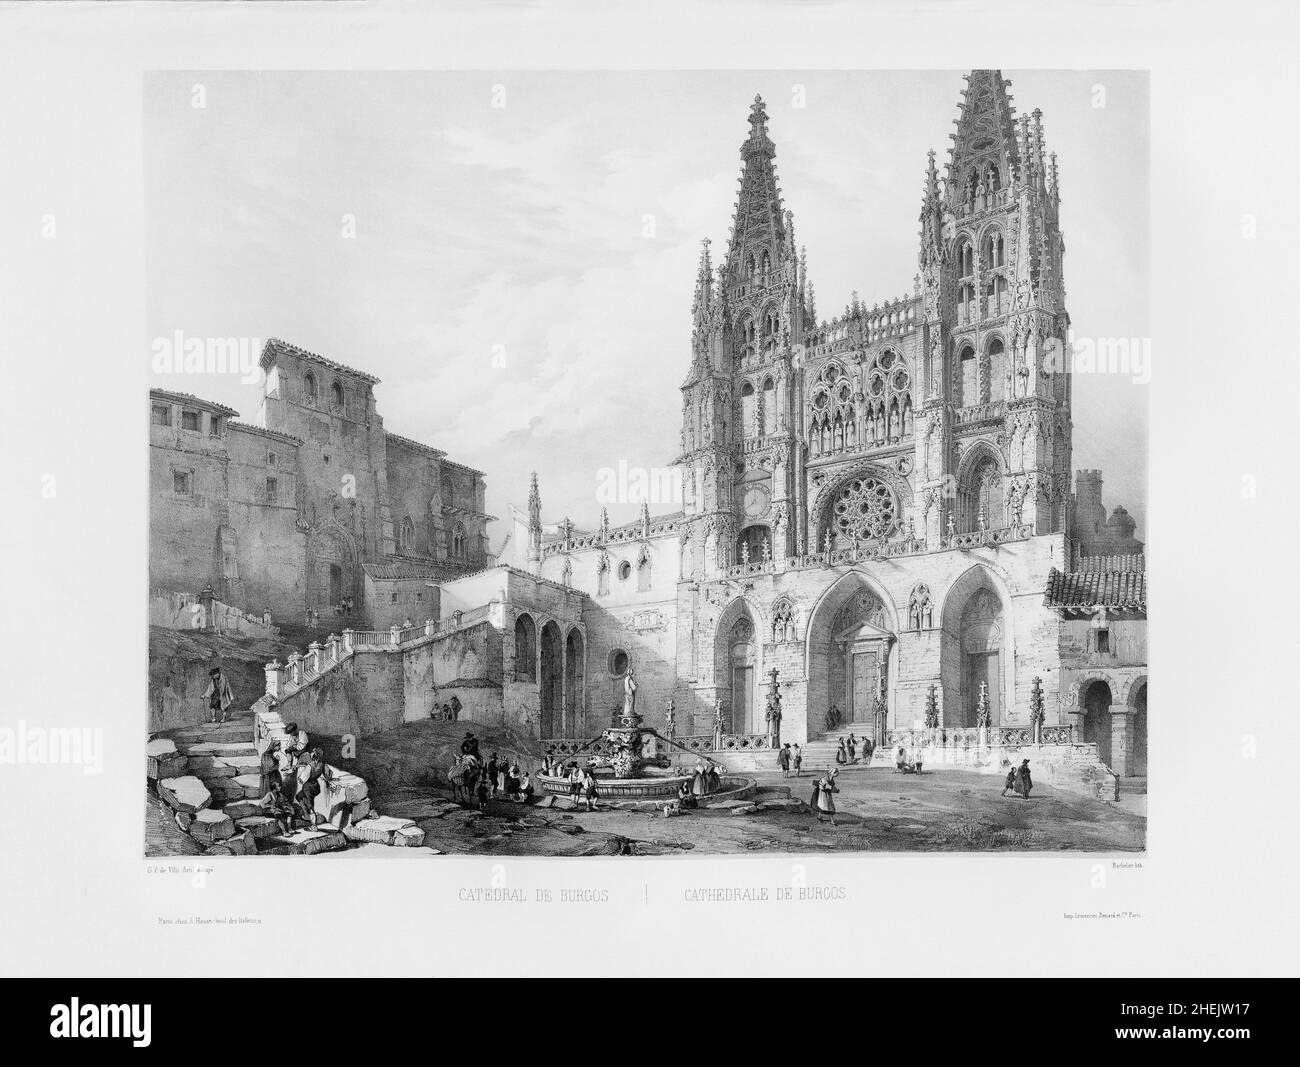 La façade principale de la cathédrale gothique de Burgos, province de Burgos, Castille et Leon, Espagne.Il a été construit au cours des 13th à 15th siècles et est classé au patrimoine mondial de l'UNESCO.Après une lithographie publiée en 1844 par Charles Claude Bachelier à partir d'un dessin de Genaro Pérez Villaamil y Duguet. Banque D'Images